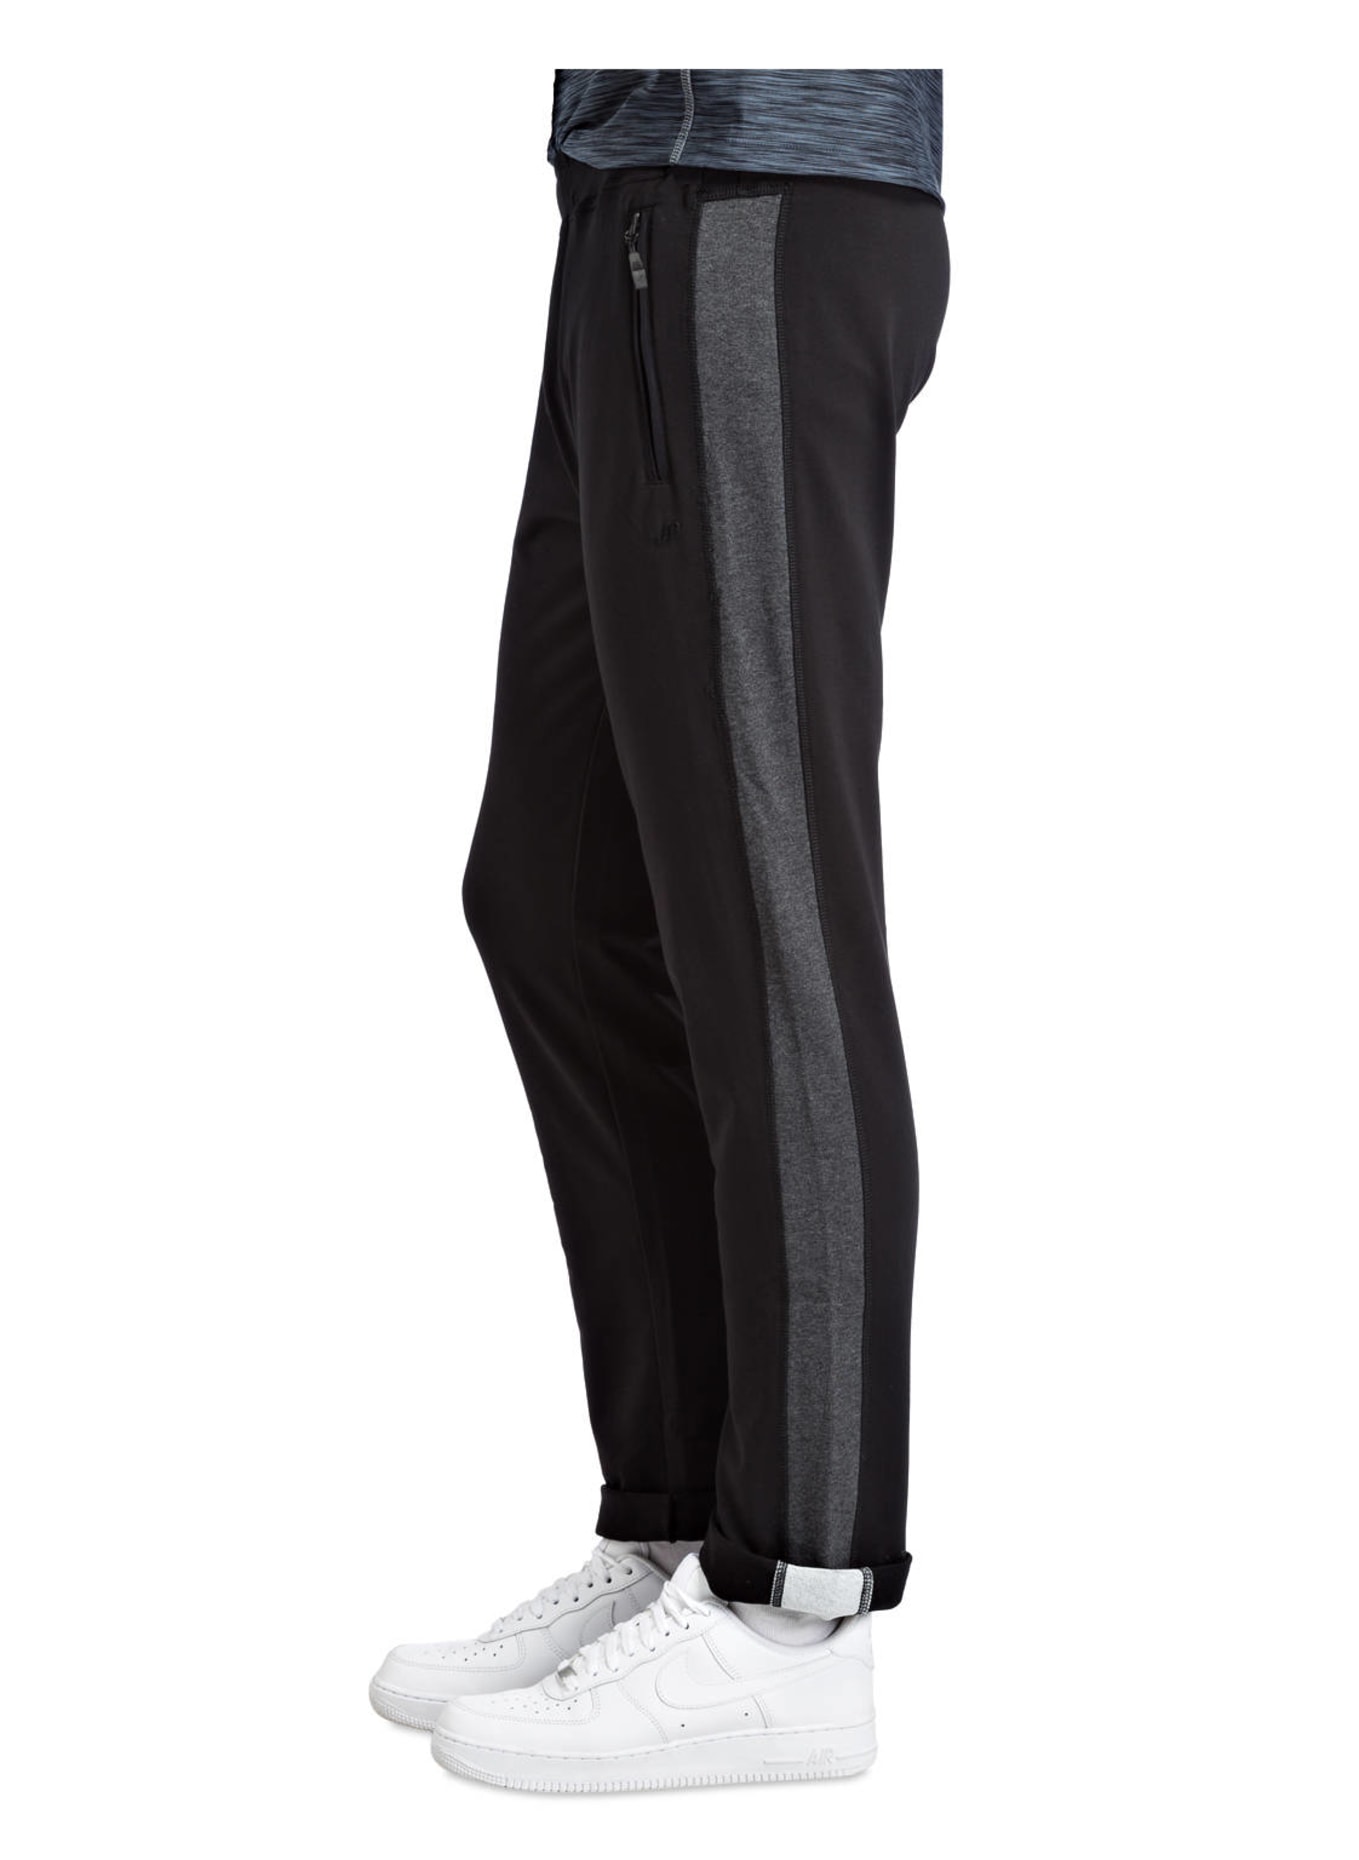 JOY sportswear Sweatpants FERNANDO, Color: BLACK (Image 4)